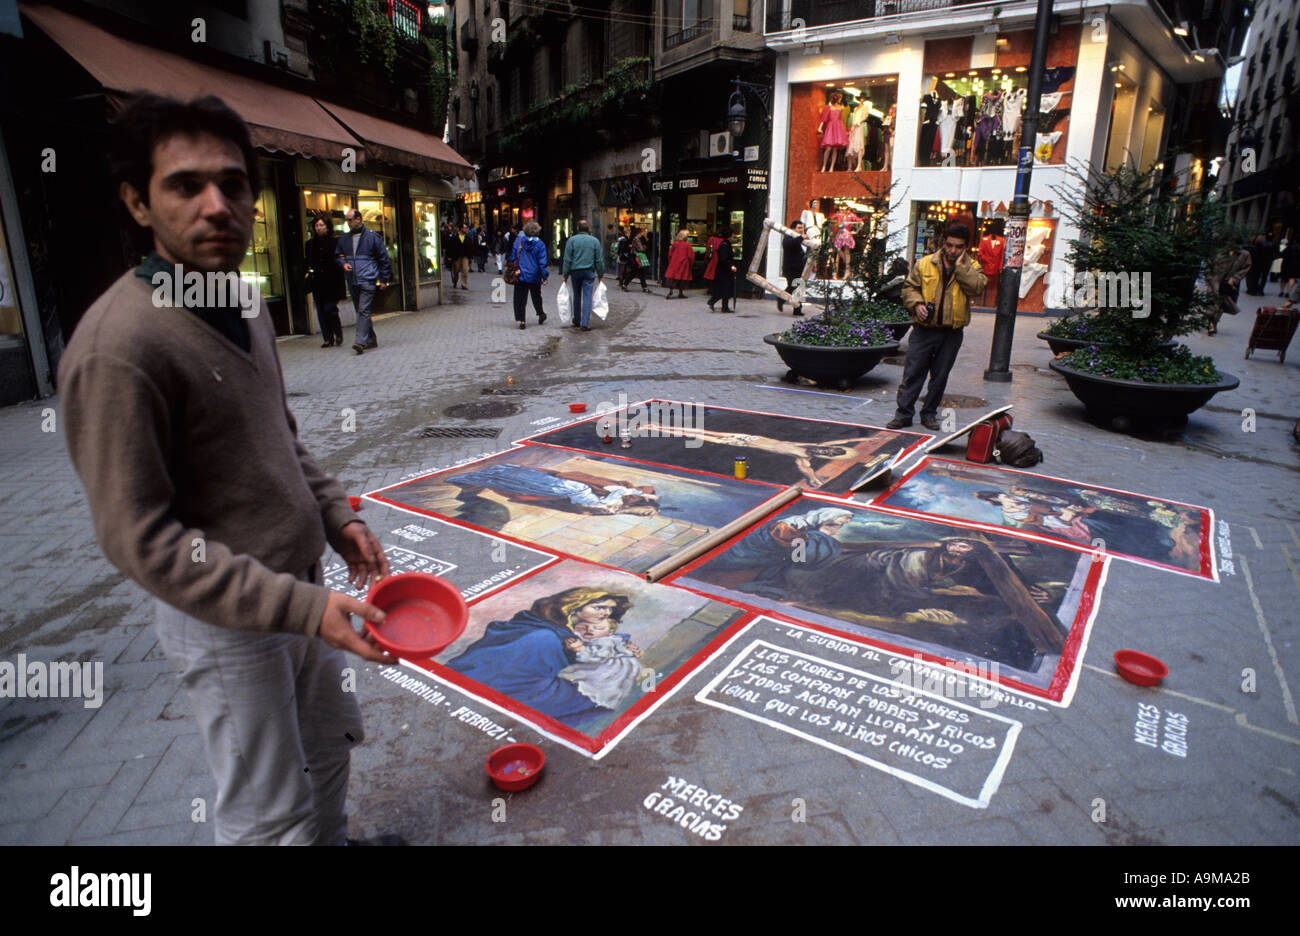 Artiste de la chaussée avec des peintures dans une voie vieille ville Barcelone Catalogne Espagne Europe Banque D'Images